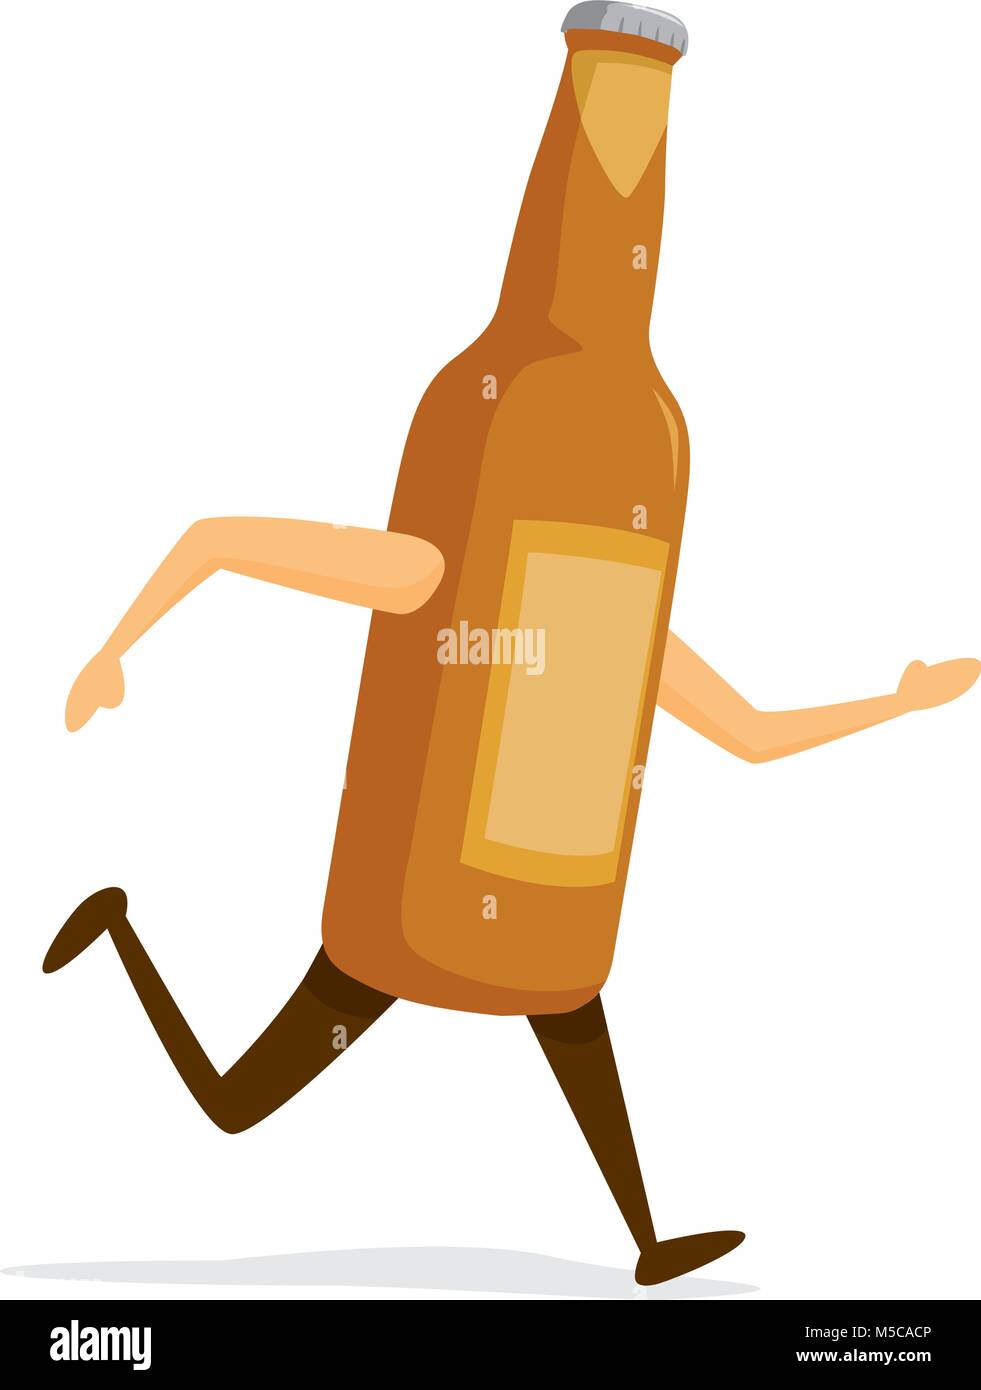 Cartoon illustration of beer bottle on the run Stock Vector Image & Art -  Alamy